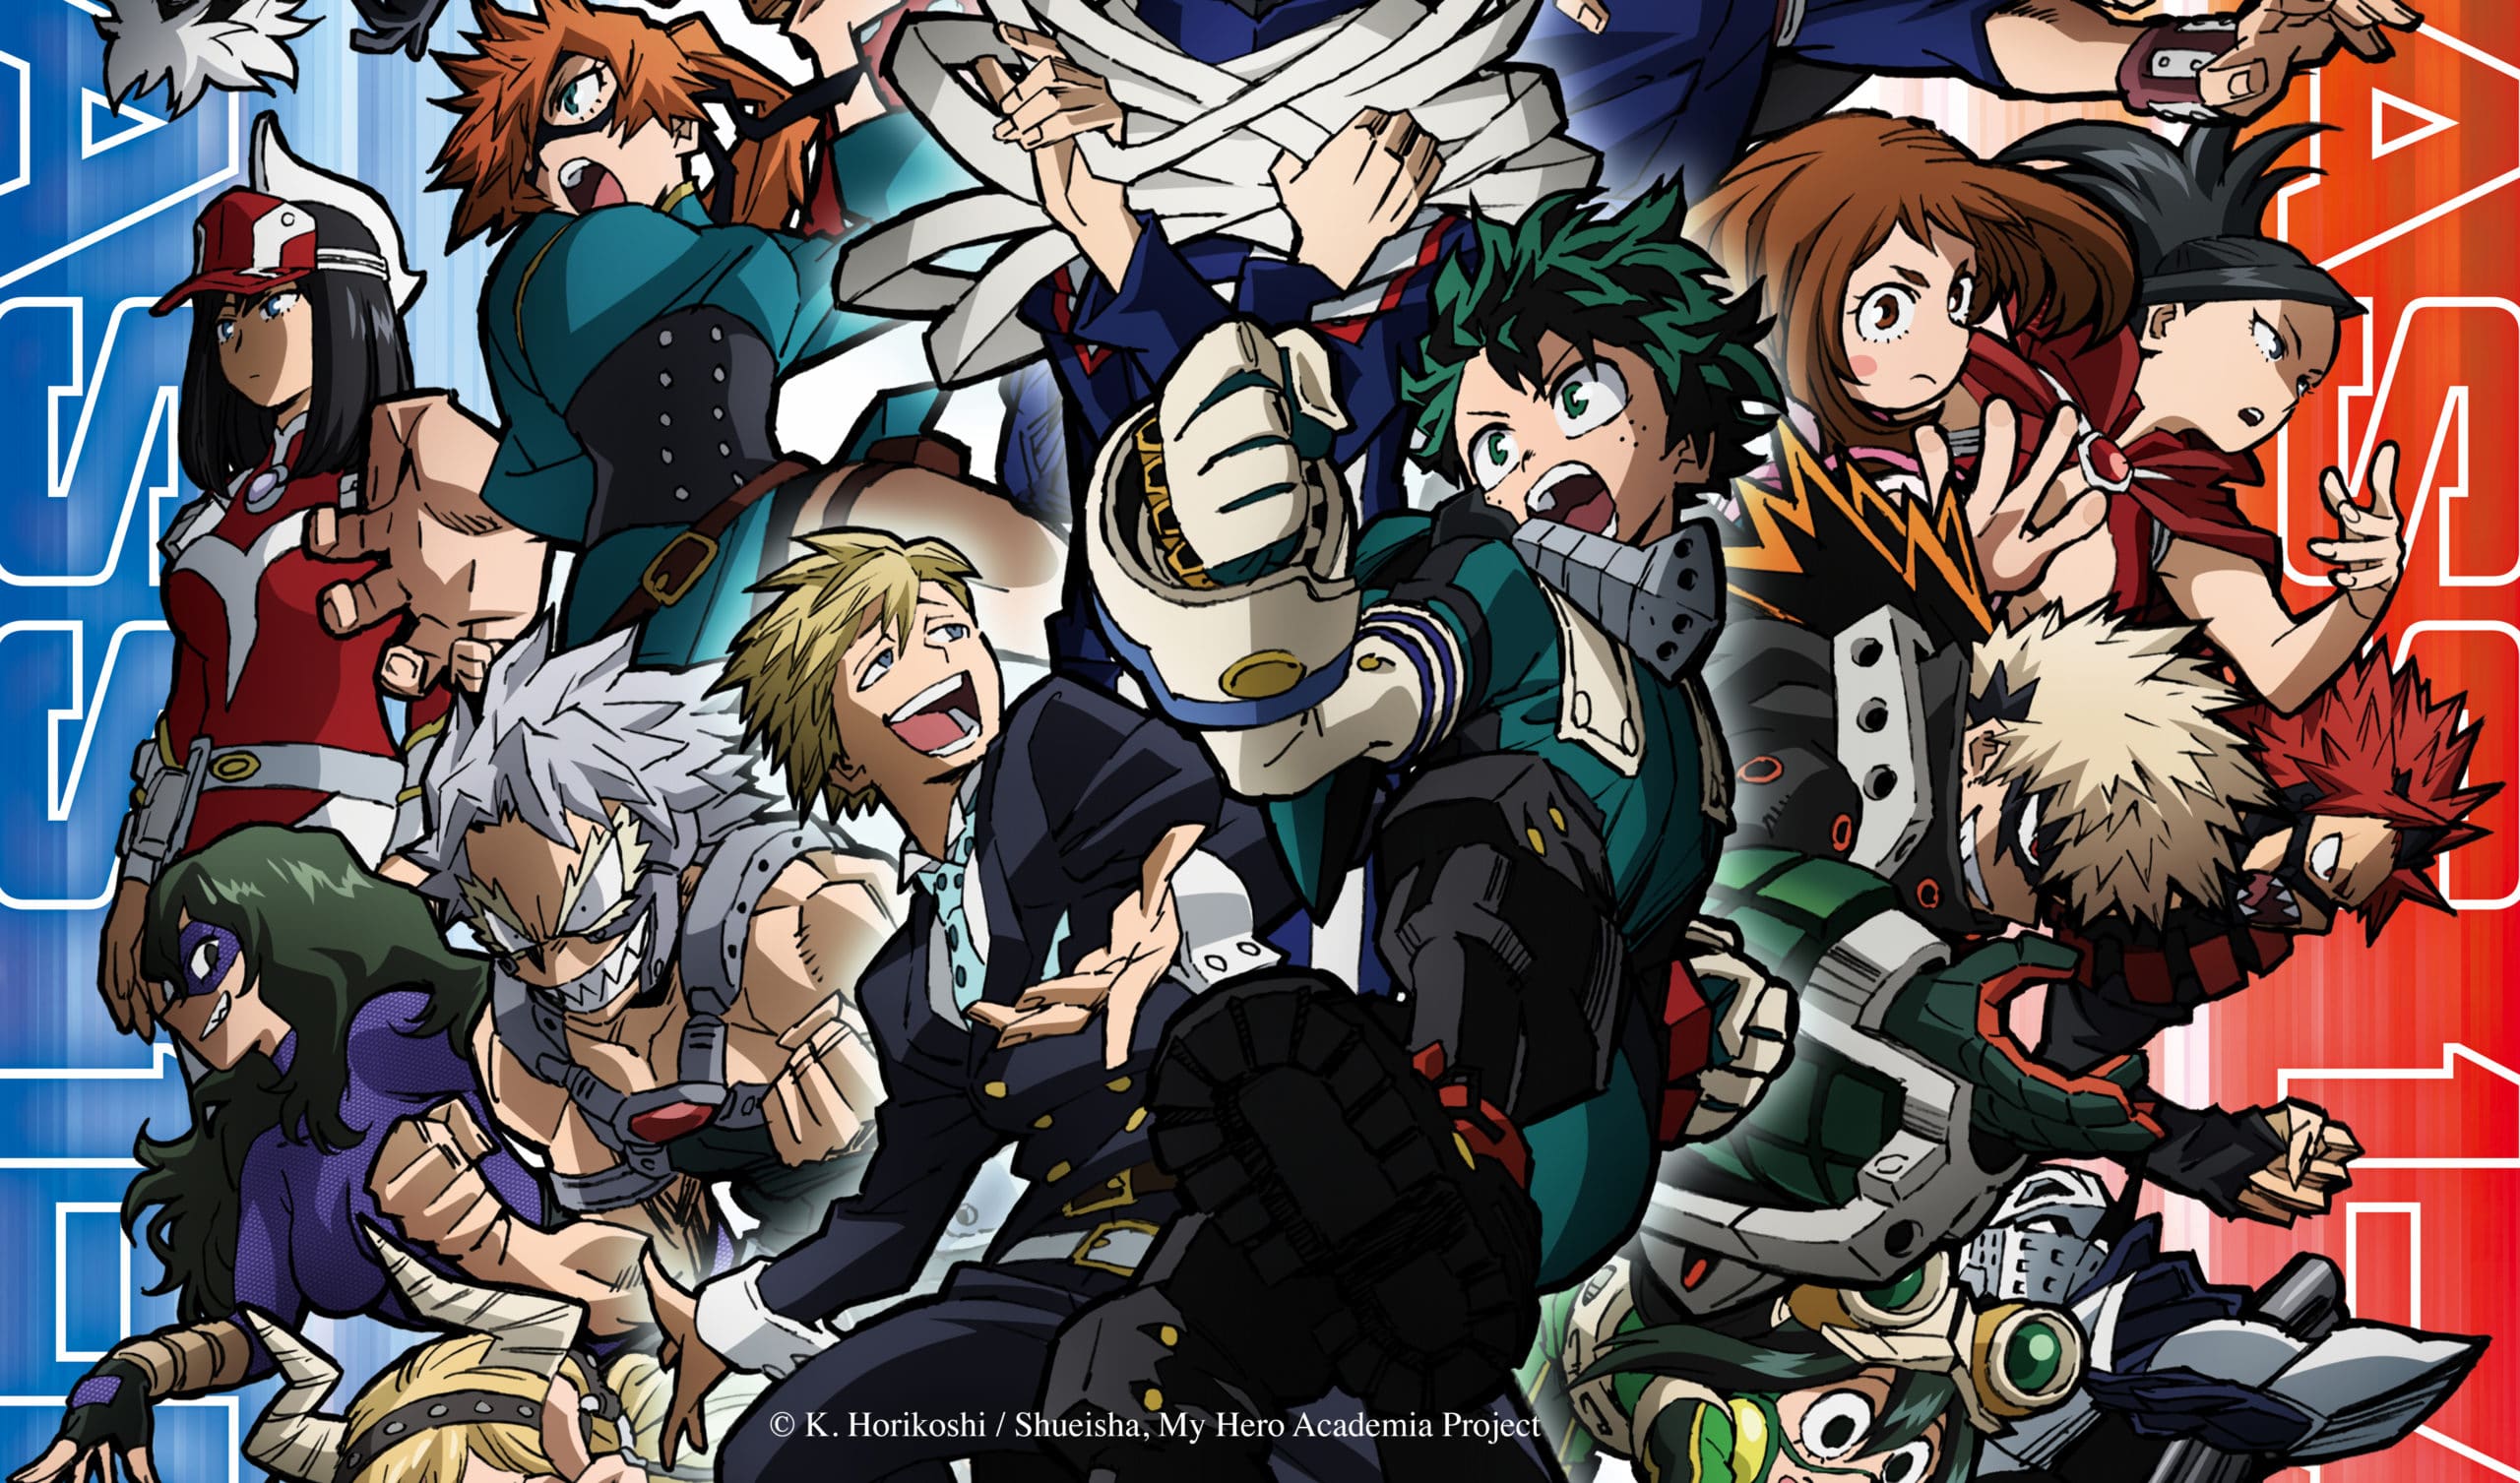 My Hero Academia Season 7 Anime Announced - Crunchyroll News